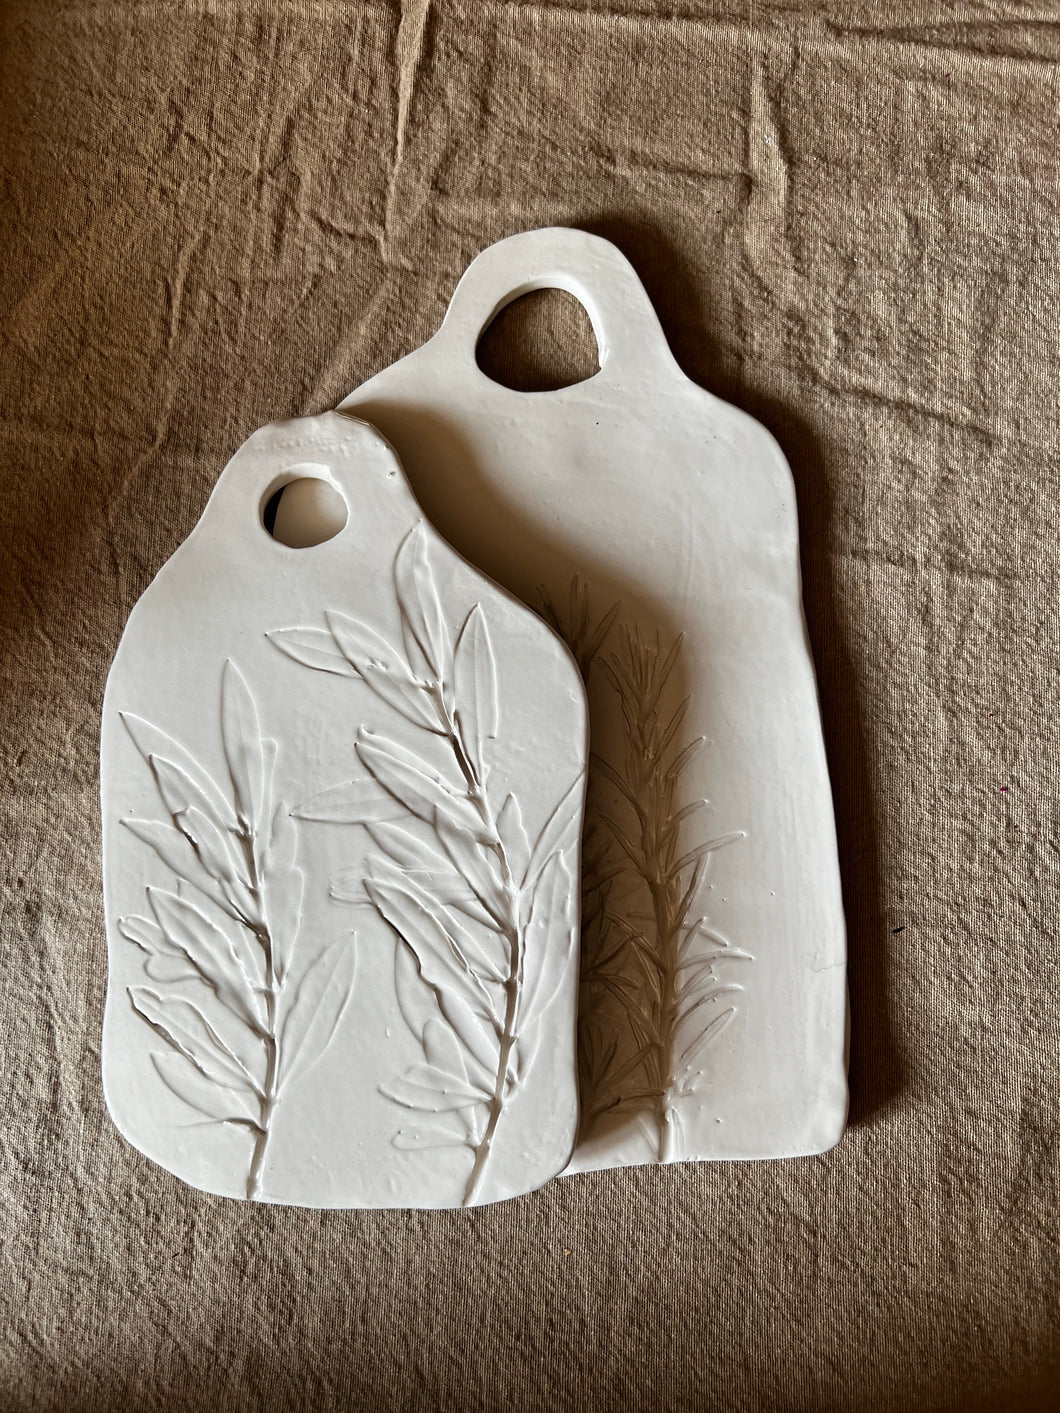 Tagliere di ceramica con fiori e foglie impressi